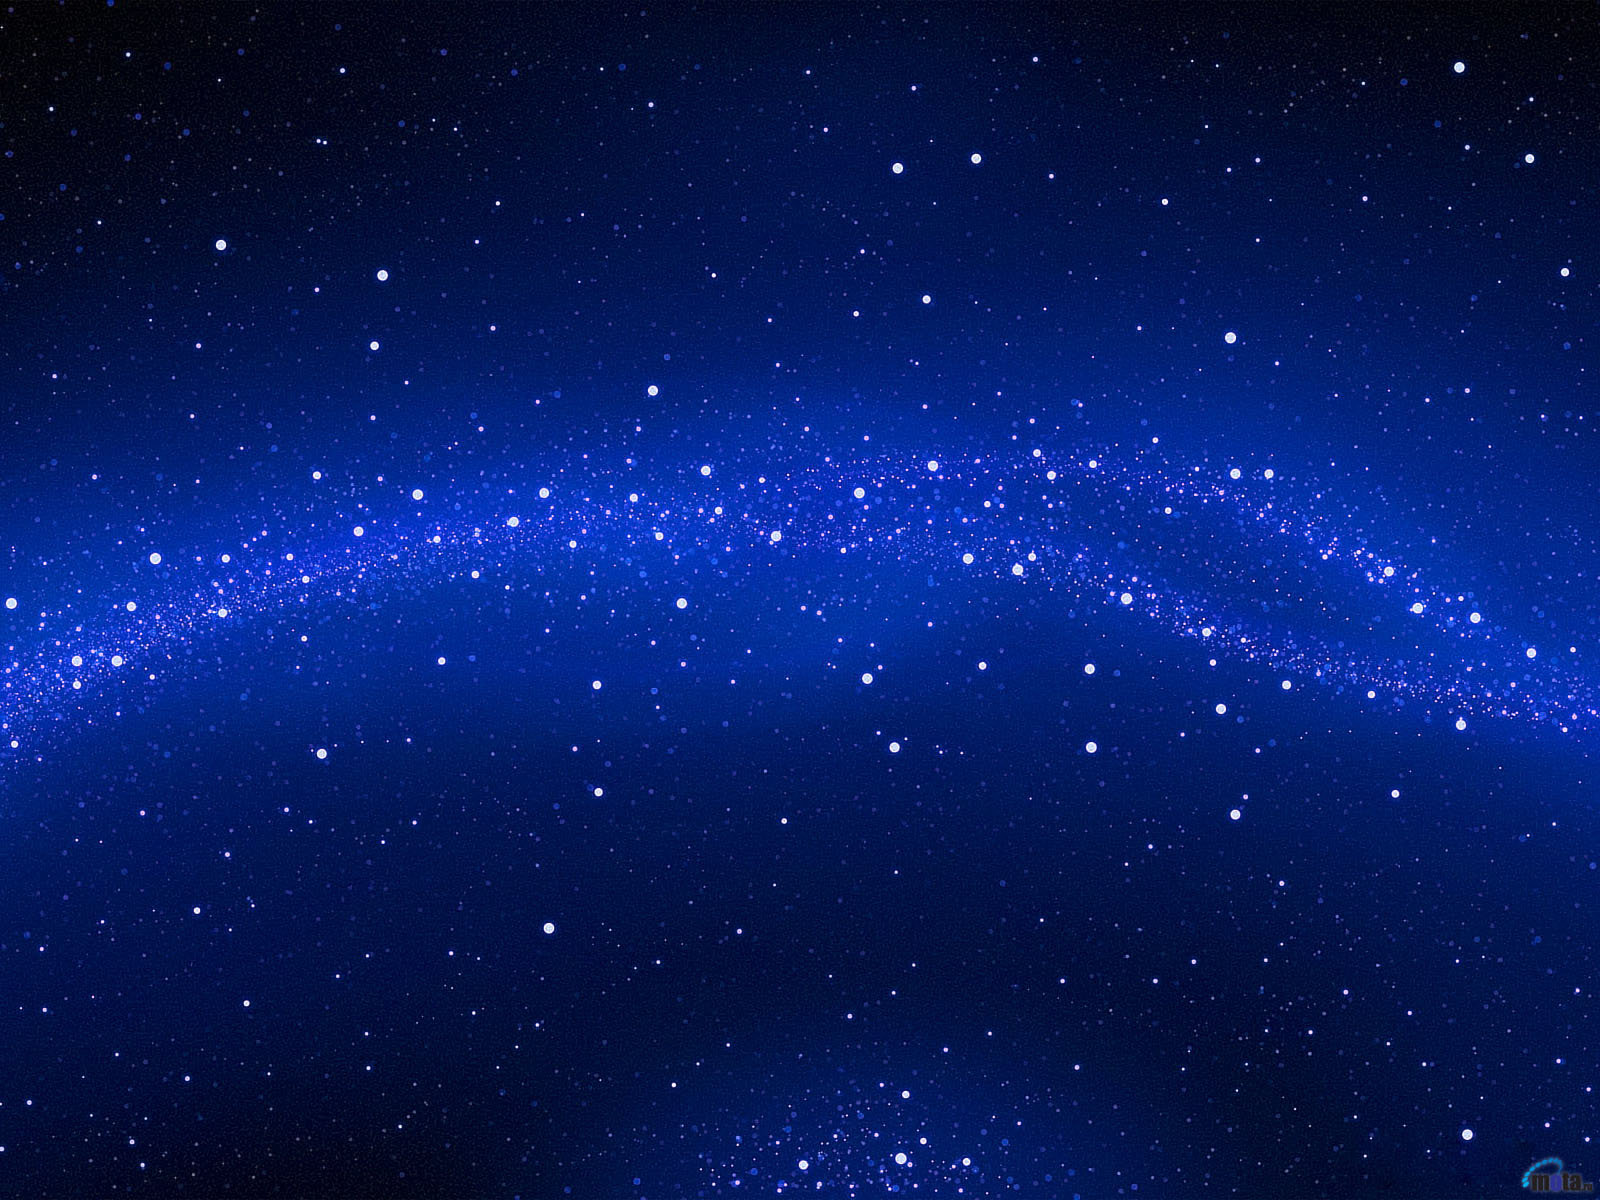 Thiên hà xanh (Blue galaxy): Thưởng thức hình ảnh thiên hà xanh sẽ là một trải nghiệm thú vị khi bạn được chiêm ngưỡng cảnh vật tuyệt đẹp của từng vì sao và hình đĩa thiên hà đầy màu sắc. Hãy khám phá và trải nghiệm vẻ đẹp của thiên hà xanh qua hình ảnh này.